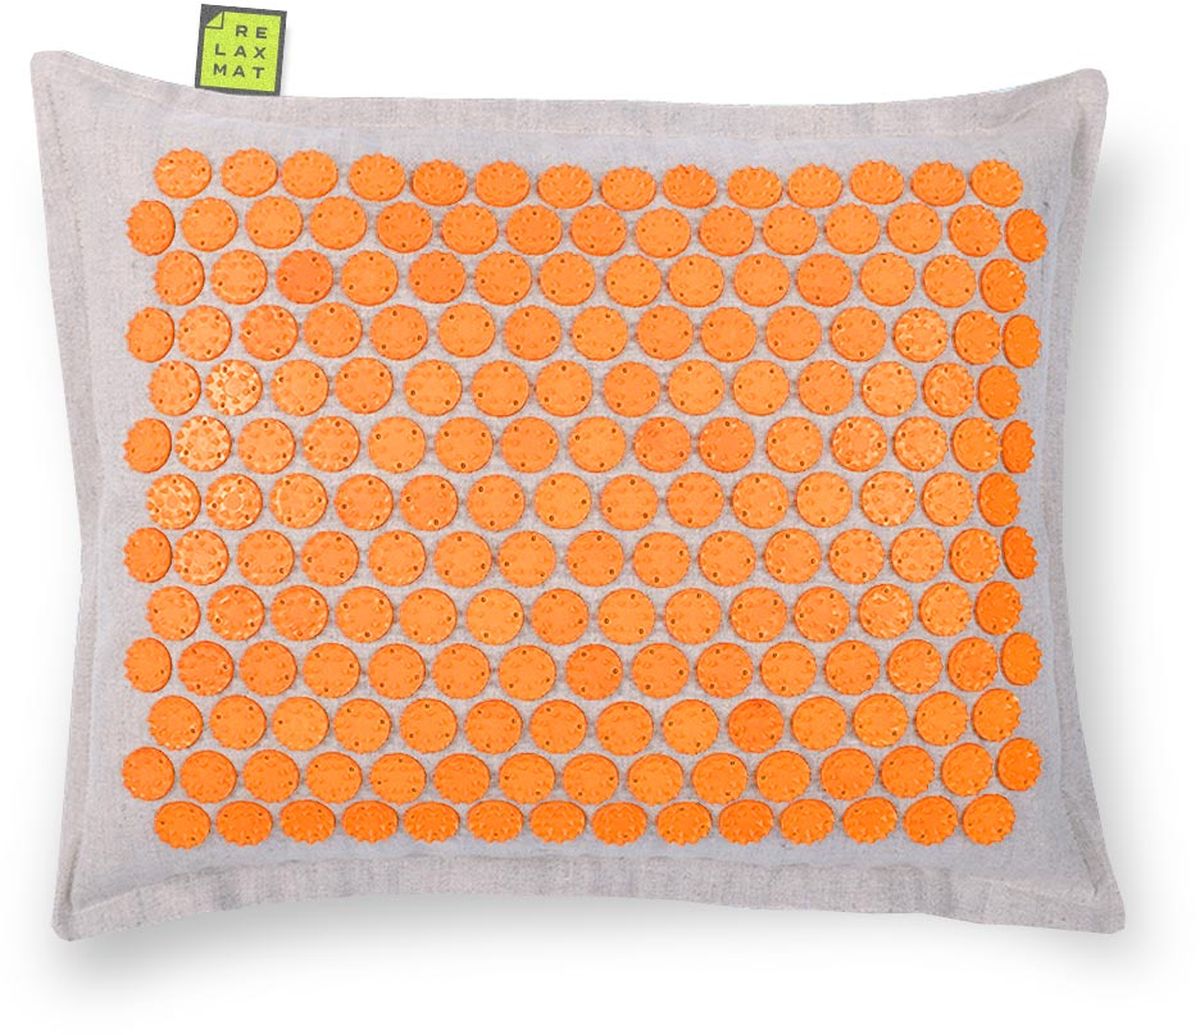 заказать и купить Relaxmat Массажная подушка, цвет: оранжевый